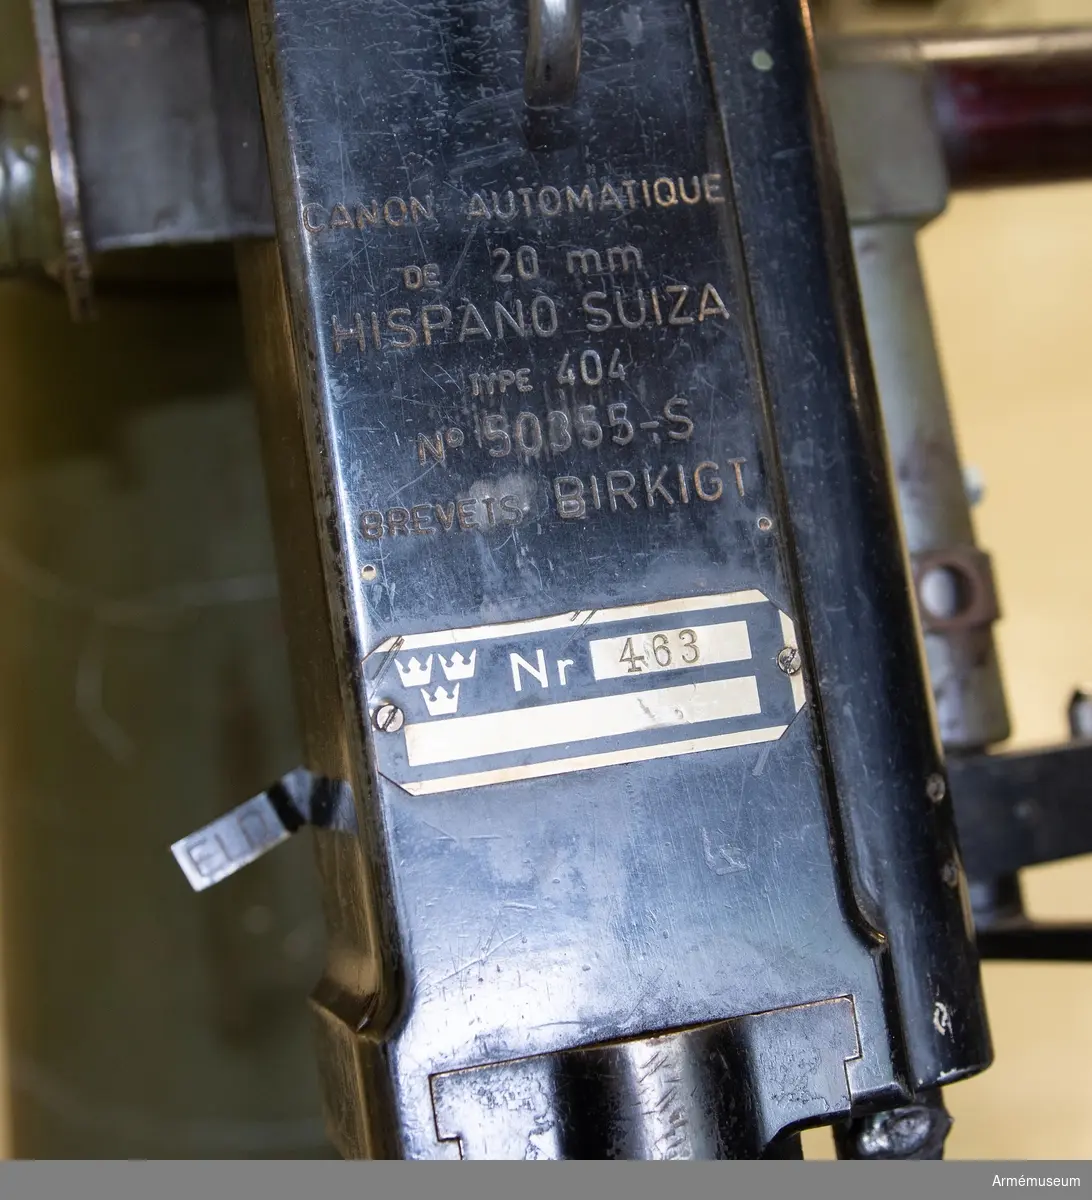 Grupp F I.
Pipa och mekanism till 20 mm luftvärnsautomatkanon m/1941. Tnr 463. I transportlåda av trä. Samhörande är konlavett, pipa, två magasinslådor, riktinstrument, låda till riktinstrument, låda till verktyg och reservdelar samt kapell.